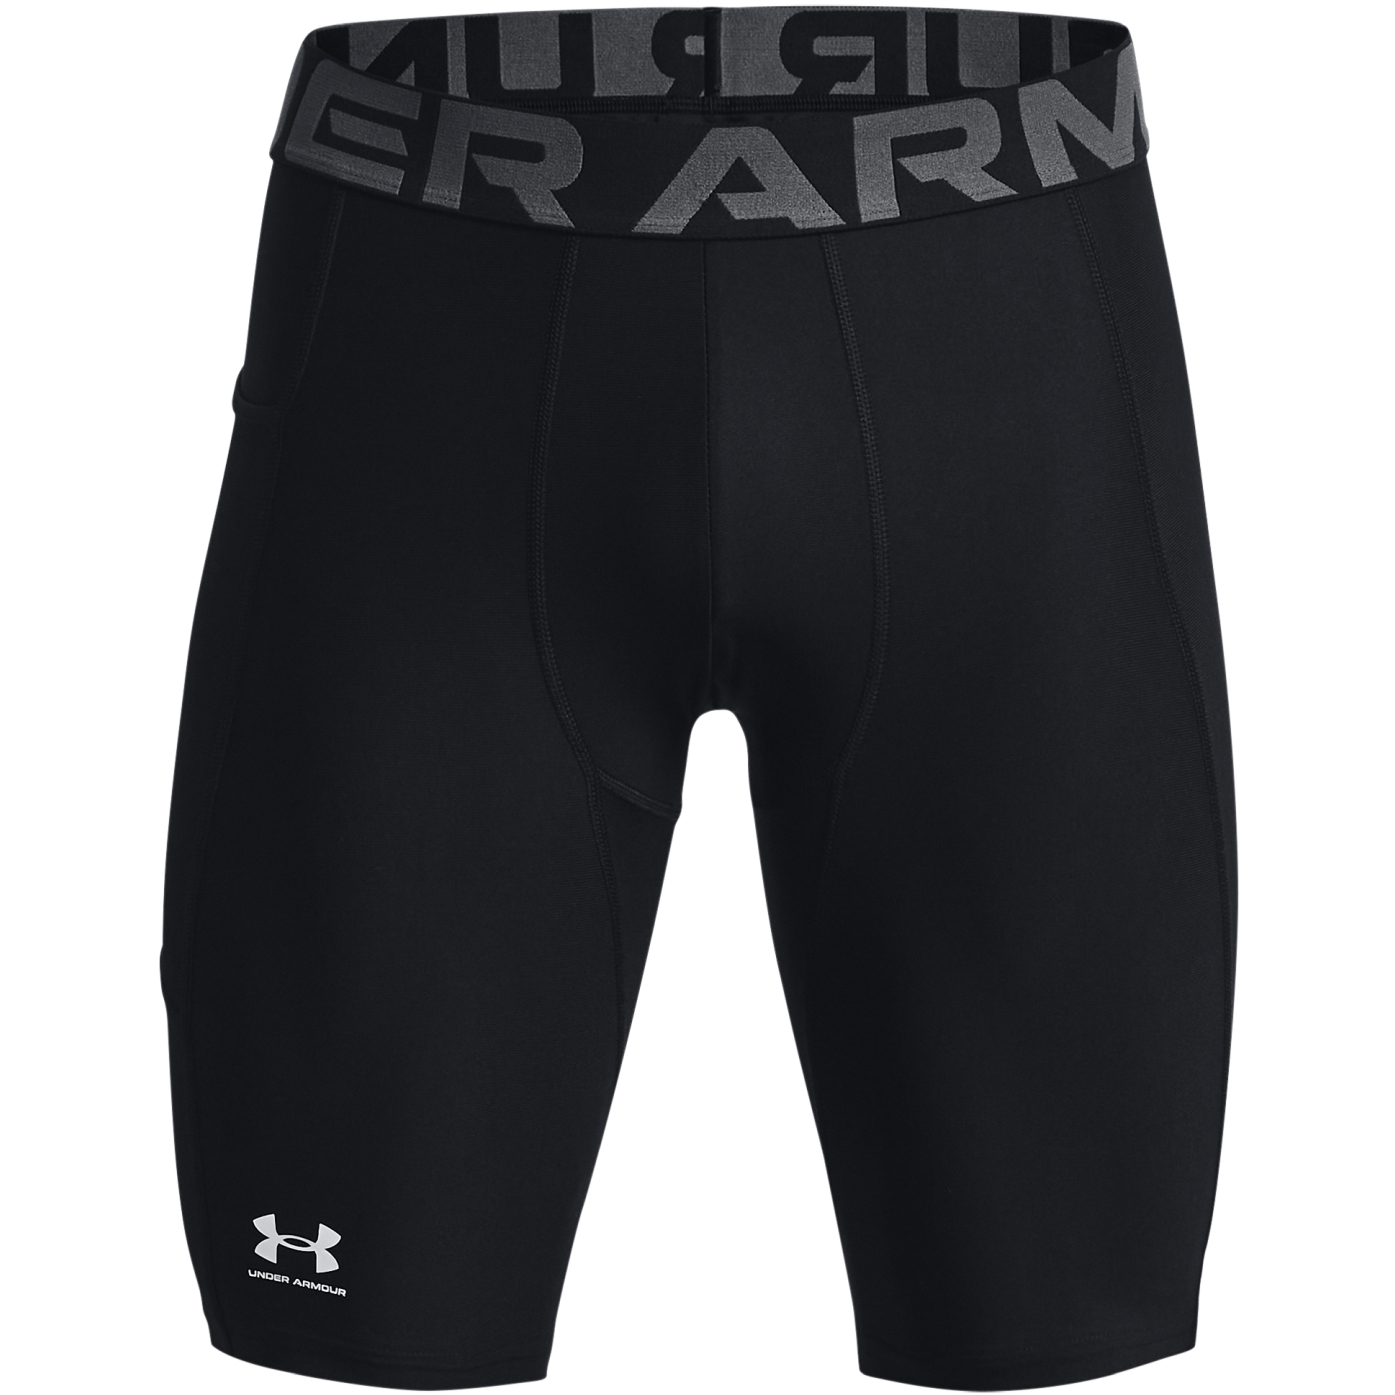 Produktbild von Under Armour HeatGear® Armour Long Shorts mit Tasche Herren - Schwarz/Weiß